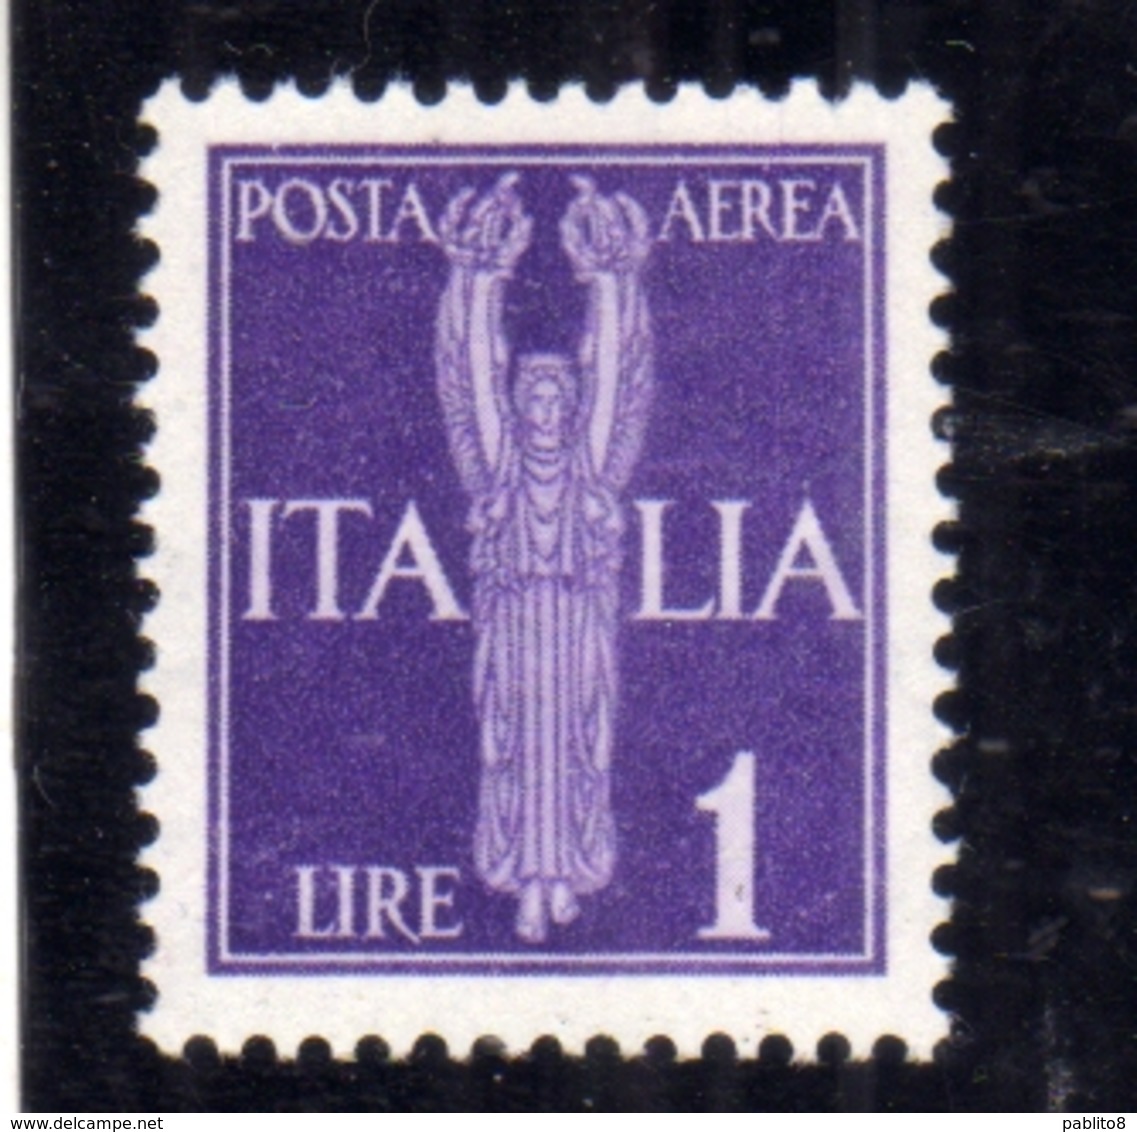 ITALIA REGNO ITALY KINGDOM 1944 REPUBBLICA SOCIALE ITALIANA RSI GNR POSTA AEREA AIR MAIL LIRE 1 MNH OTTIMA CENTRATURA - Posta Aerea